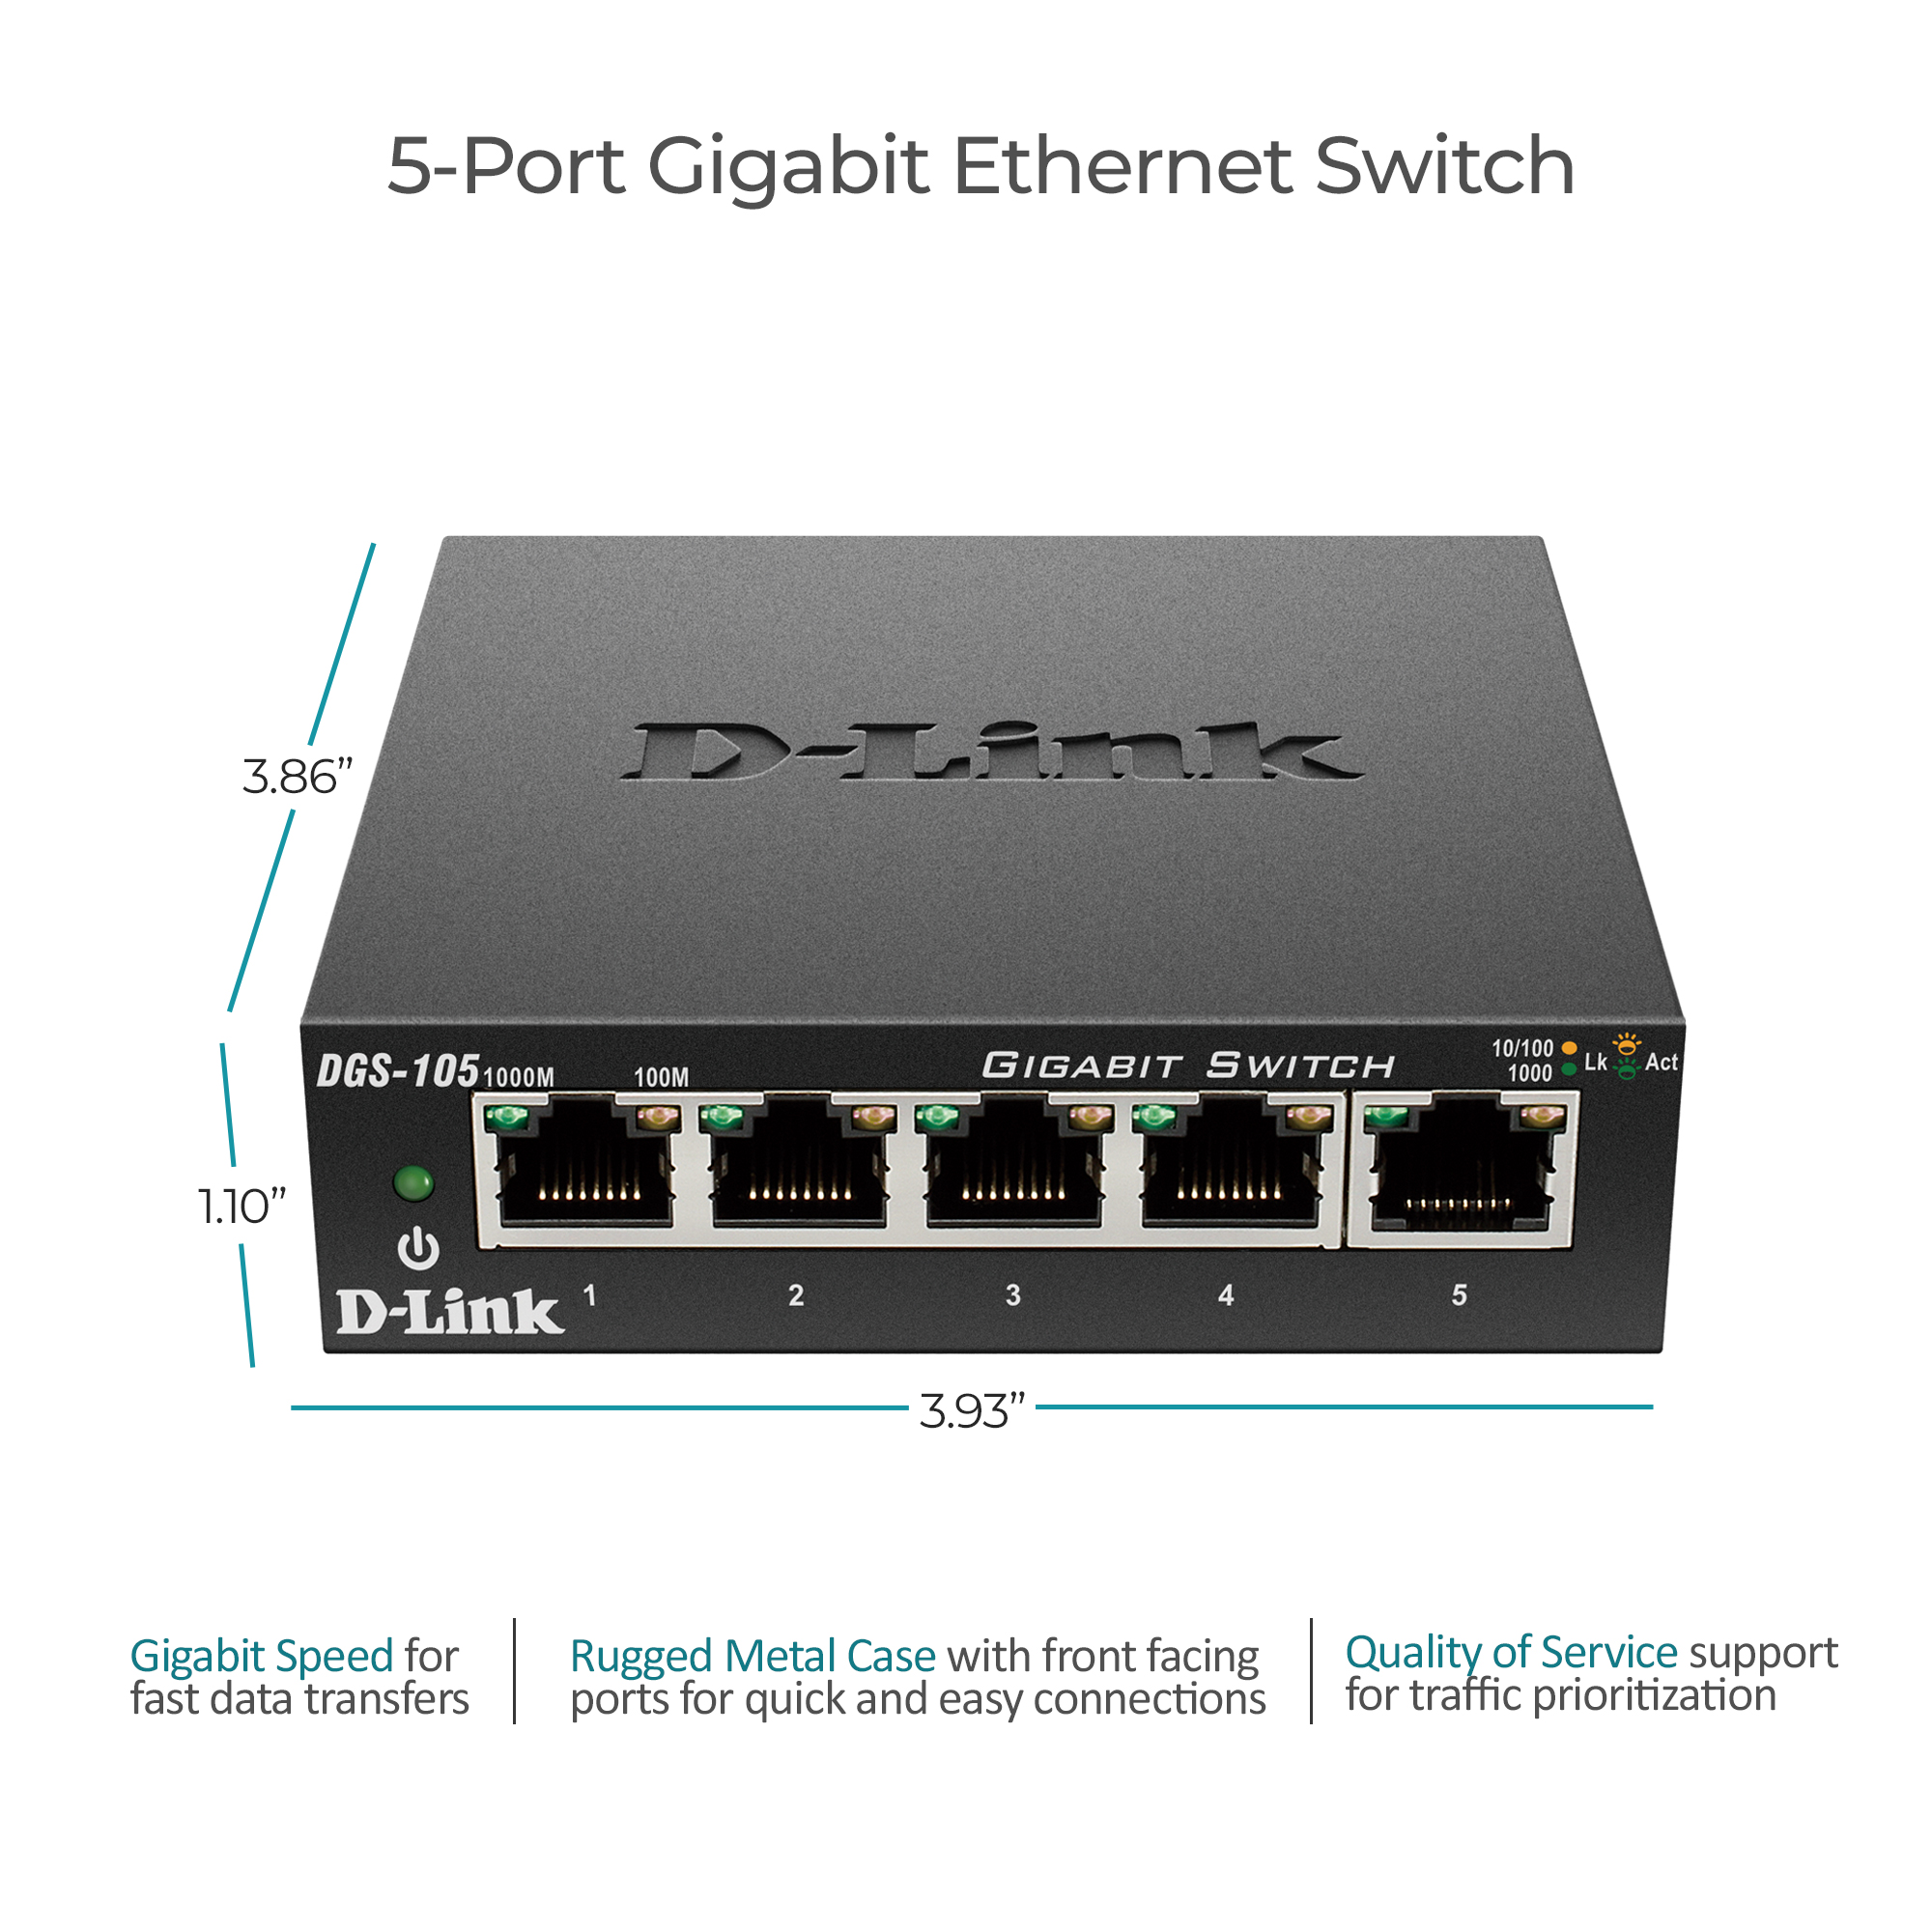 D-Link DGS-105 5 Port Gigabit Ethernet Desktop Switch - image 2 of 6